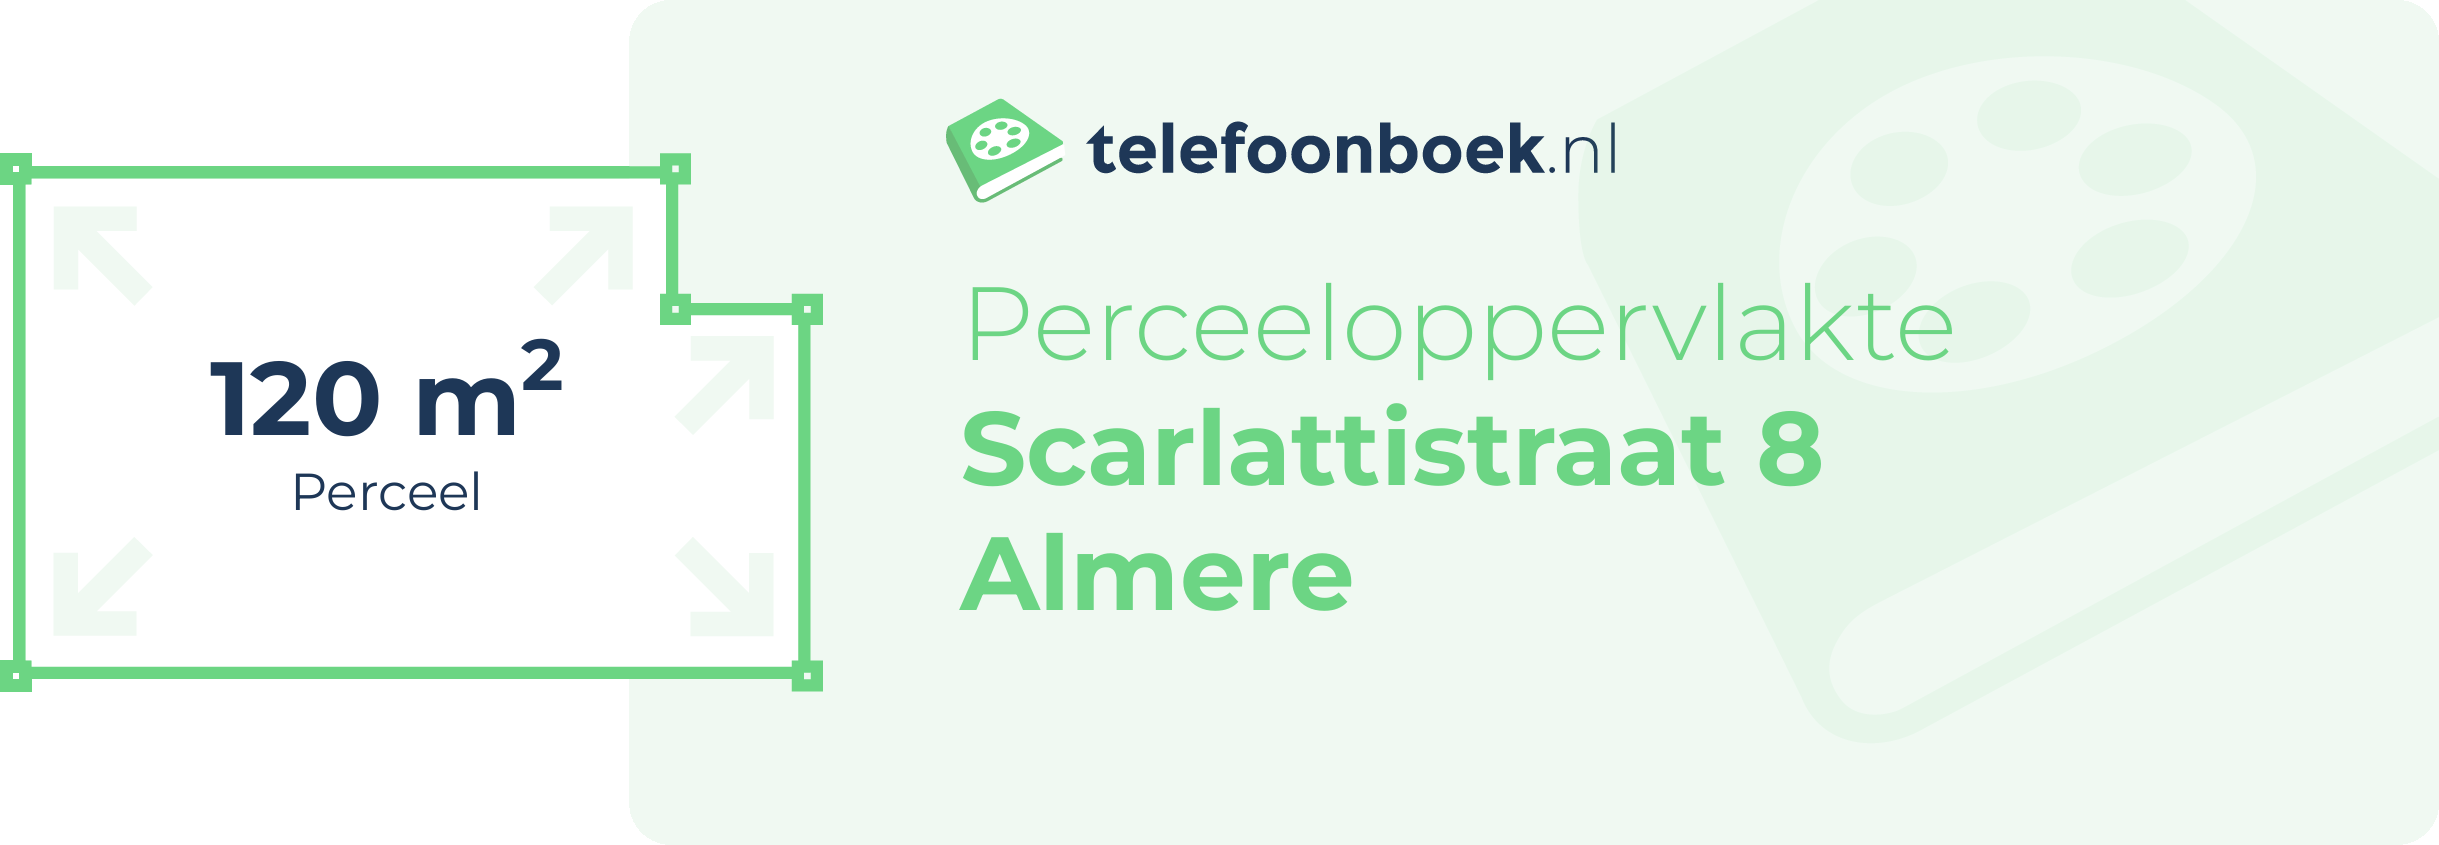 Perceeloppervlakte Scarlattistraat 8 Almere